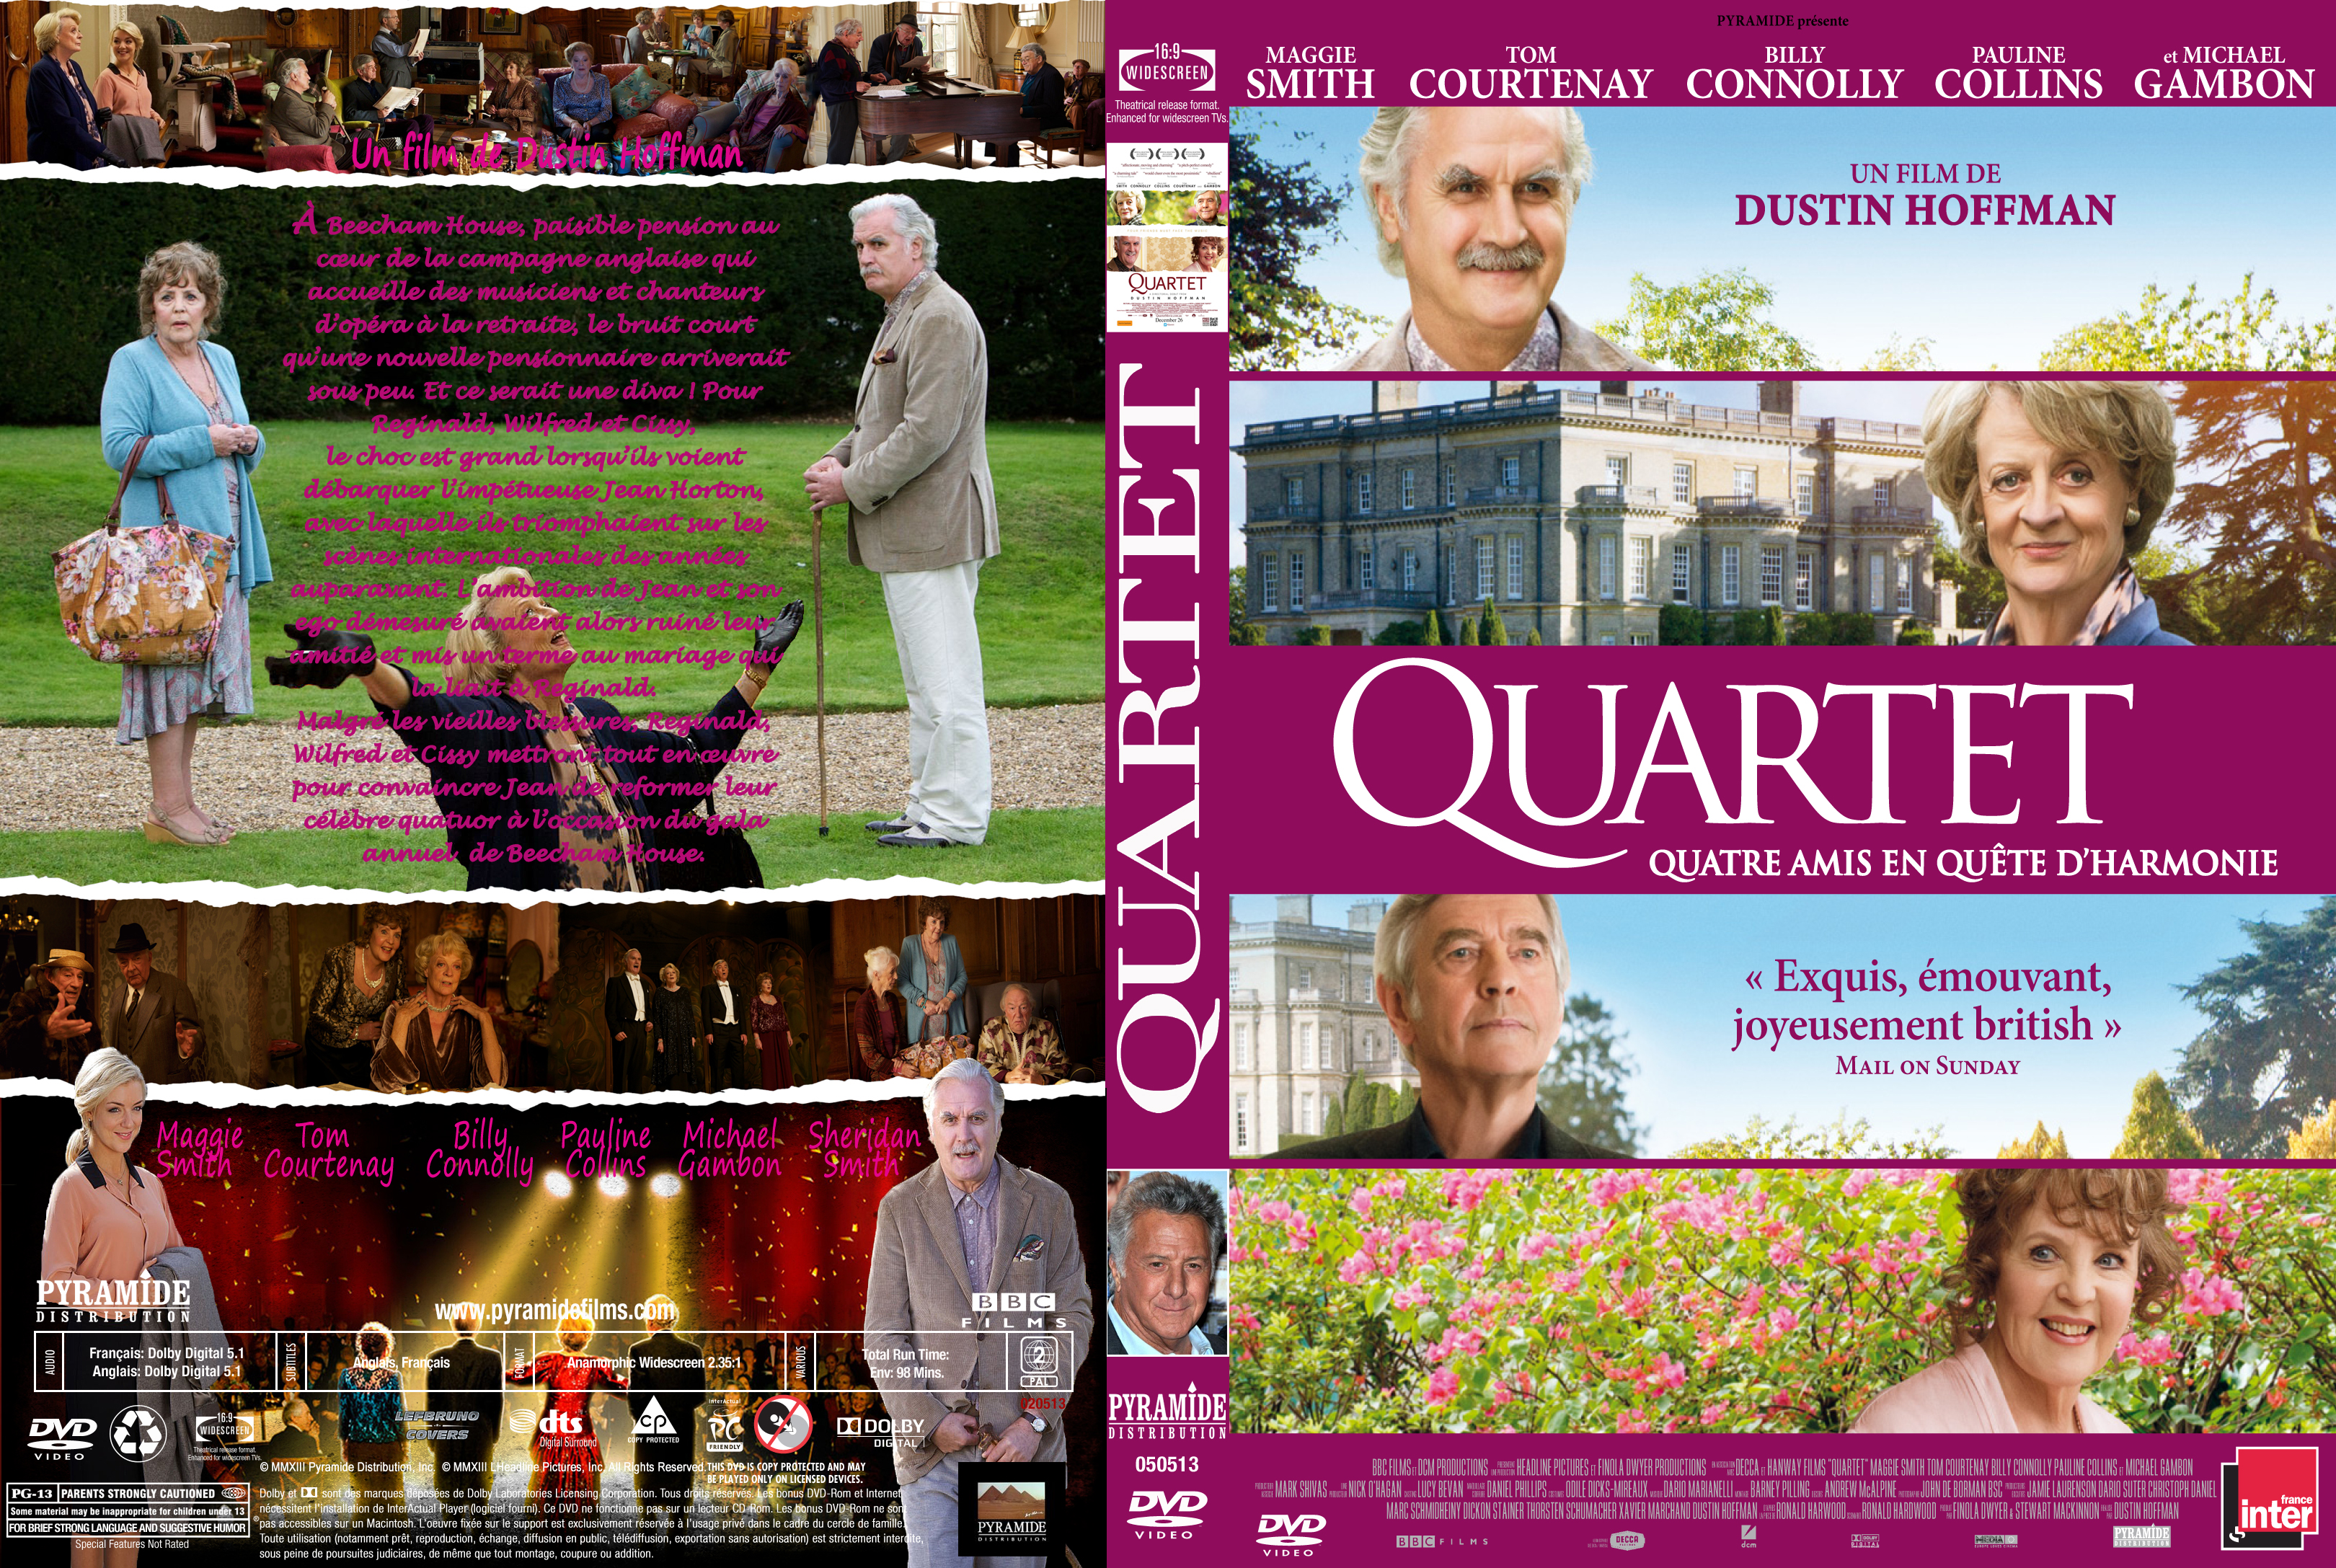 Jaquette DVD Quartet custom